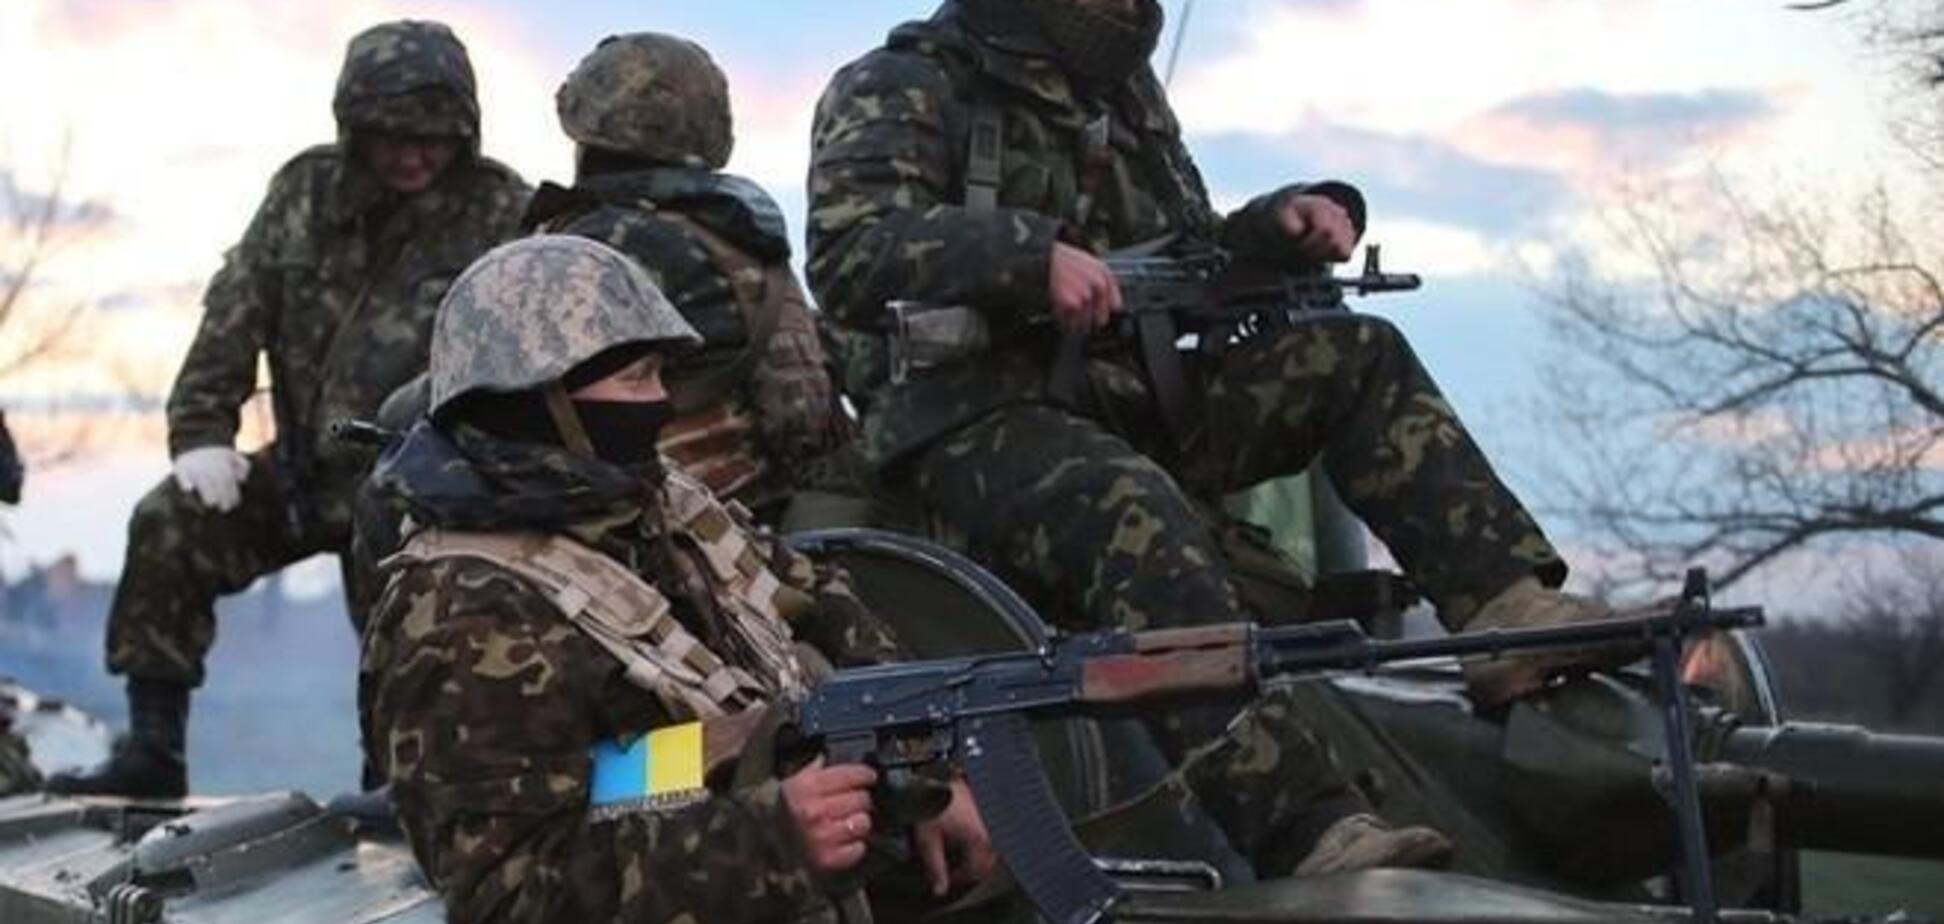 Ликвидированы! Спецназ ВСУ сорвал прорыв террористов ''ЛНР'' на Донбассе: подробности успешной операции